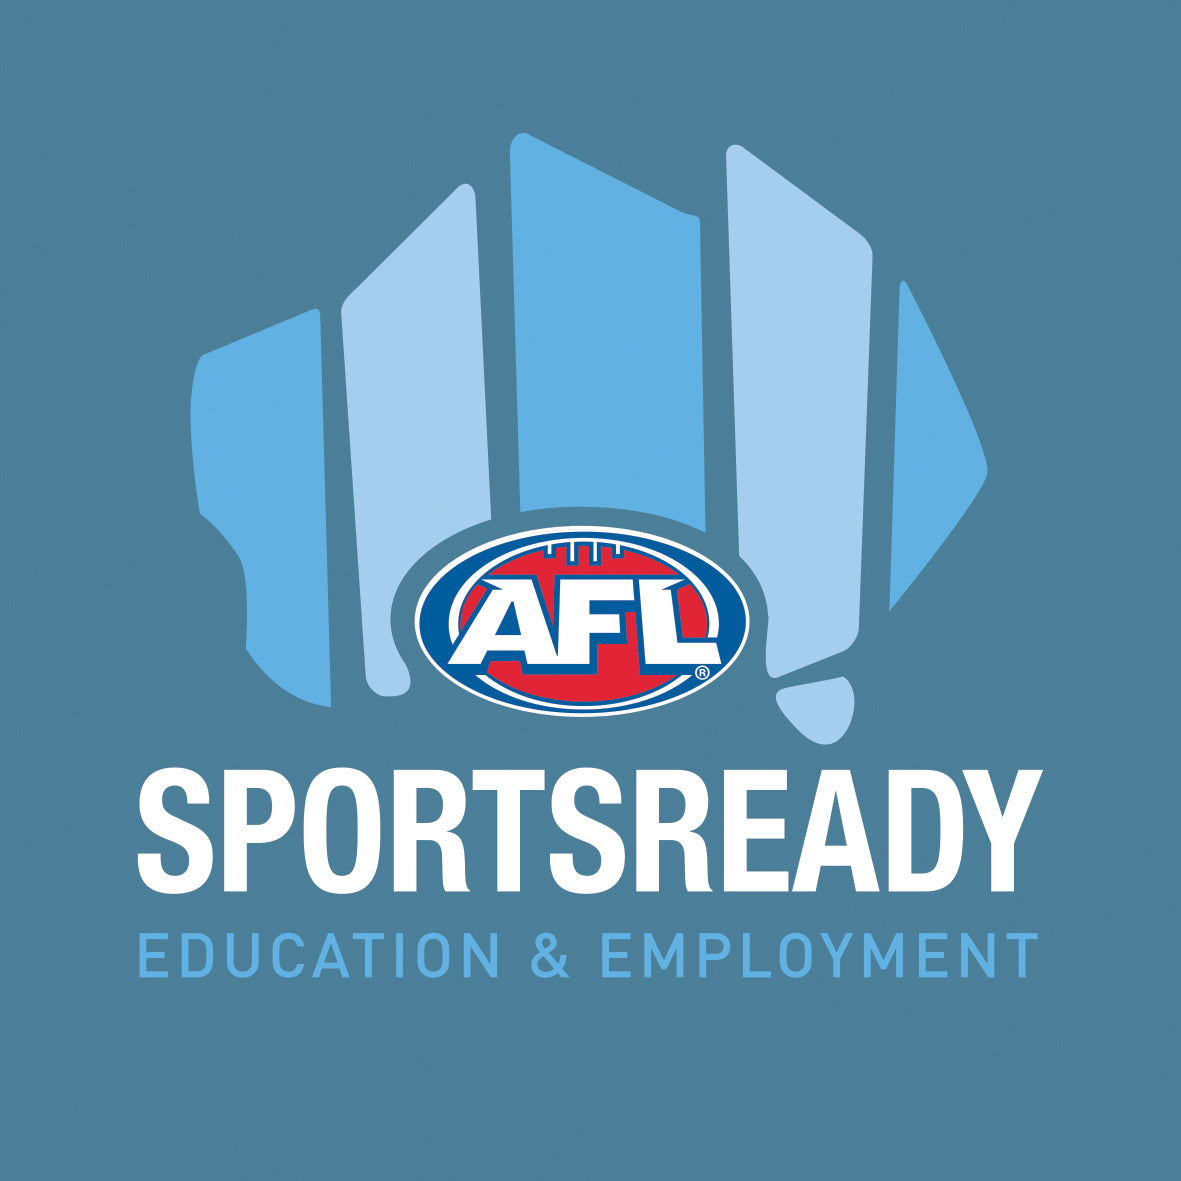 Advanced Certificate in Coaching Fundamental AFL Skills